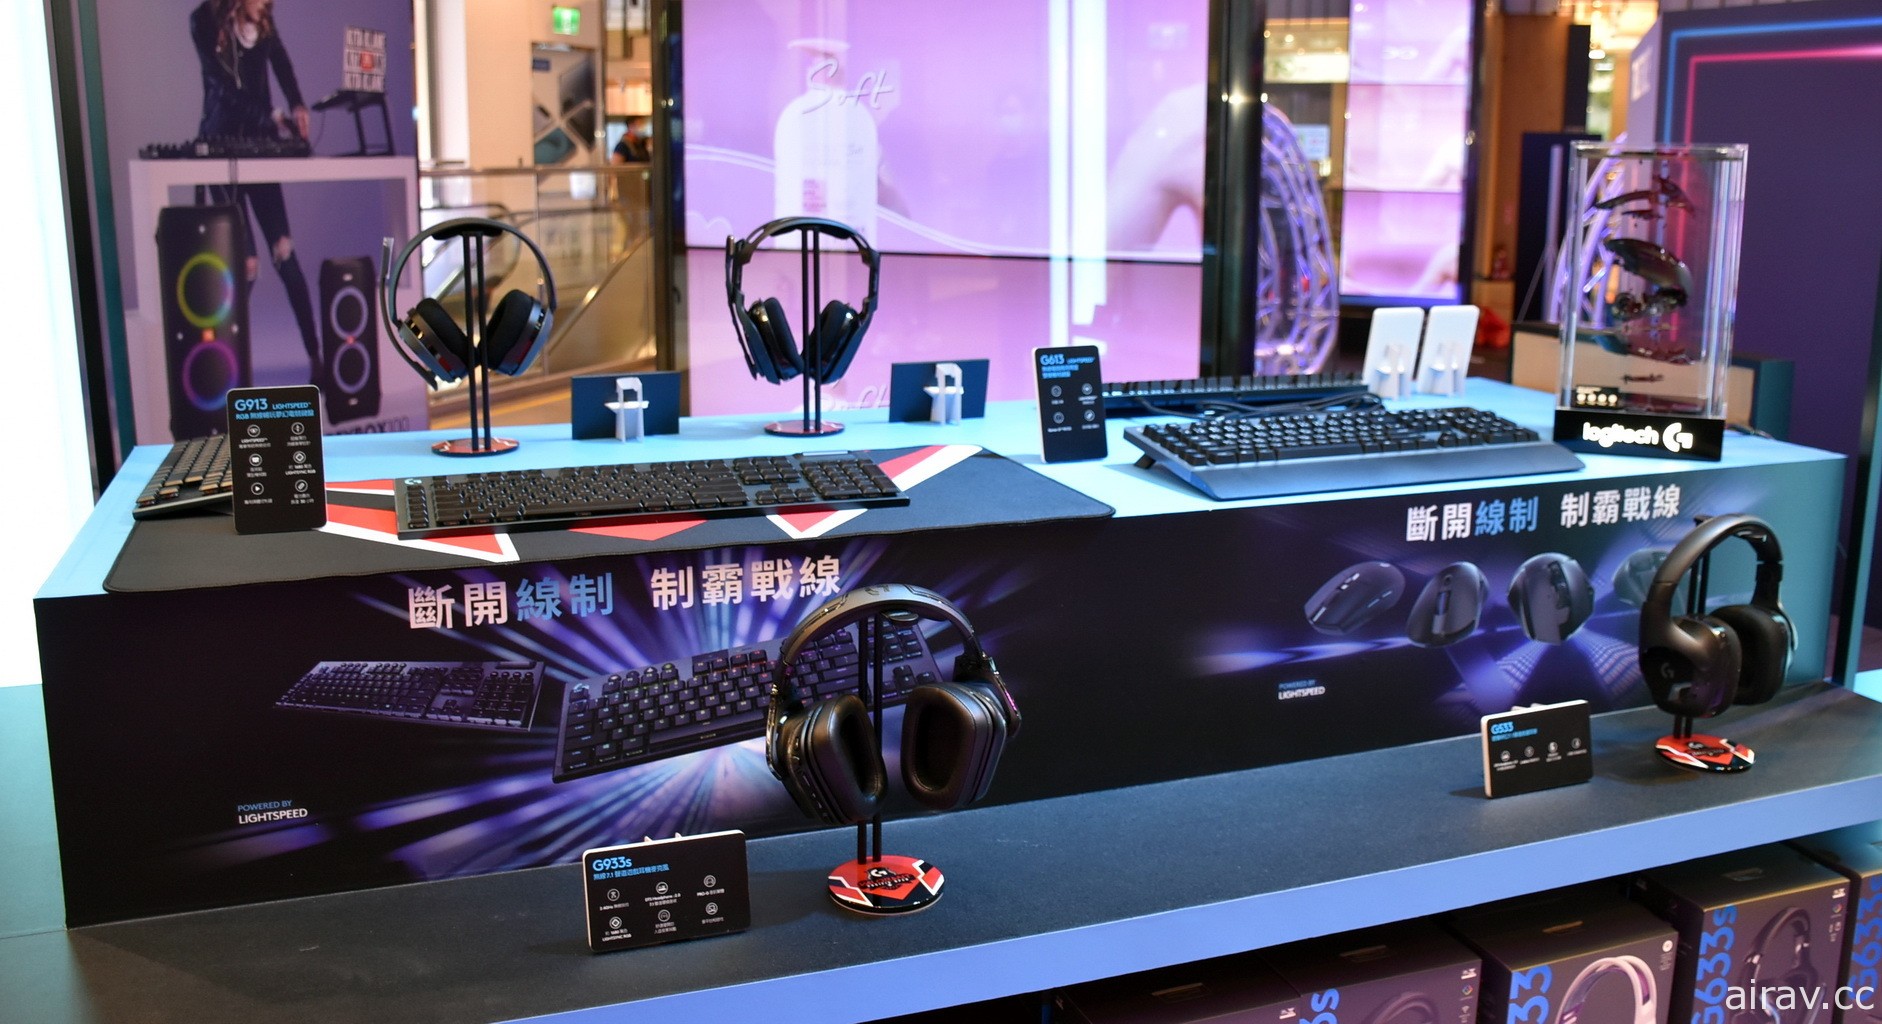 羅技今日推出 PRO X SUPERLIGHT 輕量化無線電競滑鼠 重量 63 公克